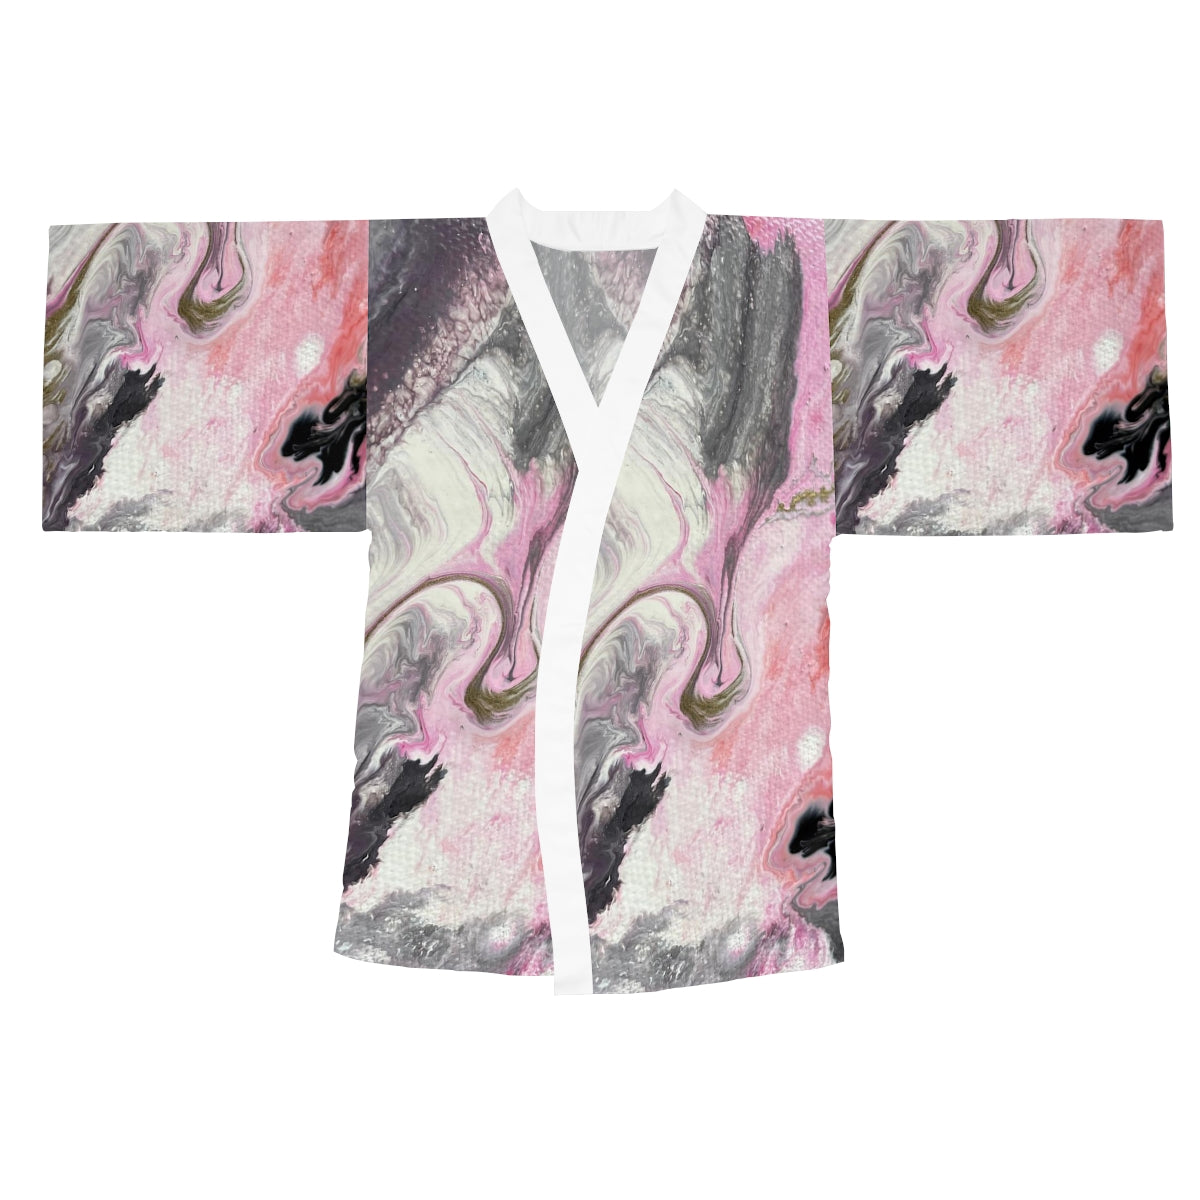 Robe quimono de manga comprida - design rosa escuro e cinza 